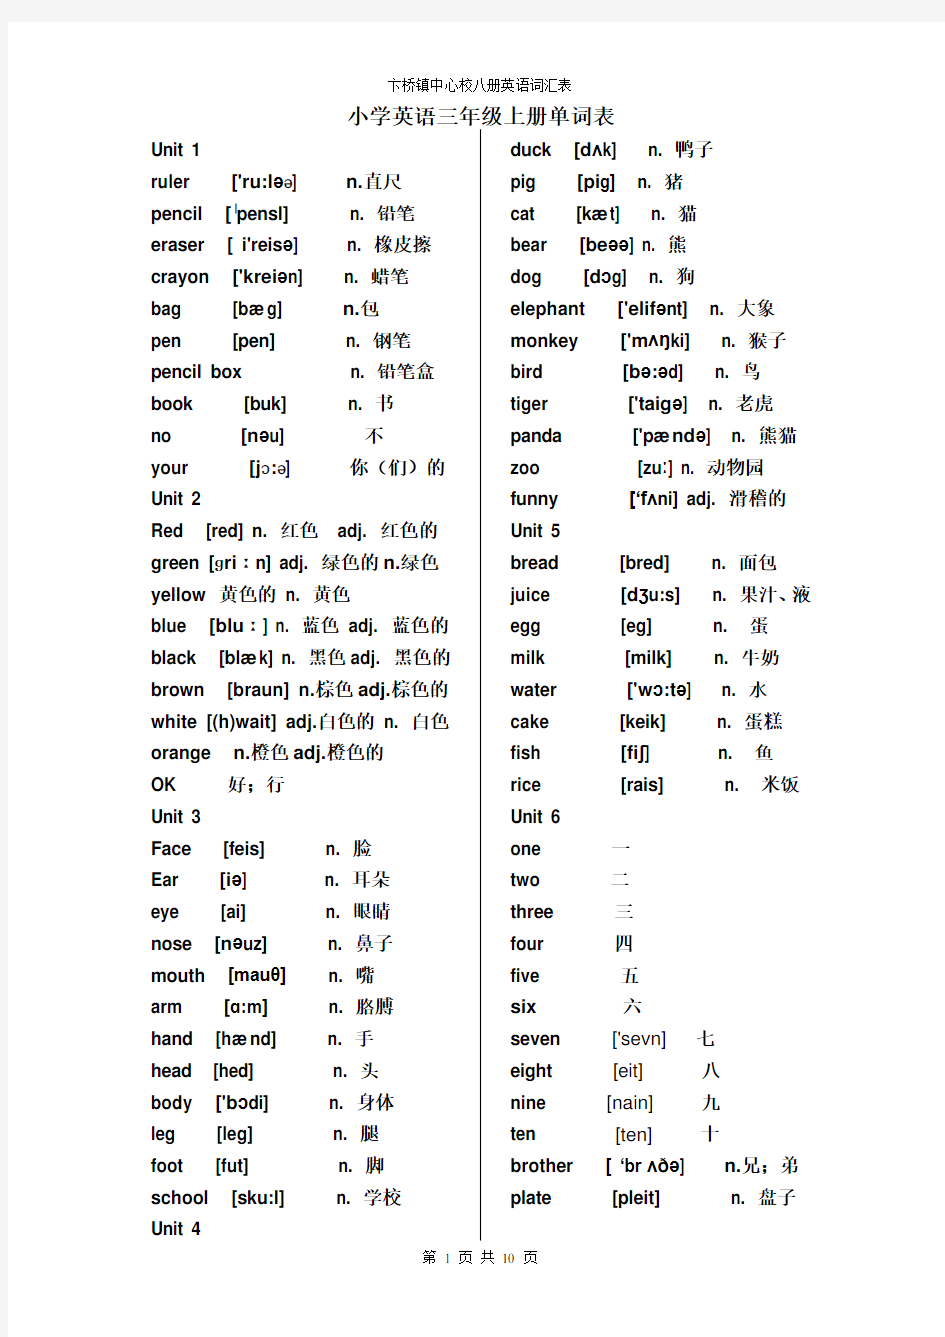 (完整版)新版PEP小学英语(3-6年级)单词表--打印